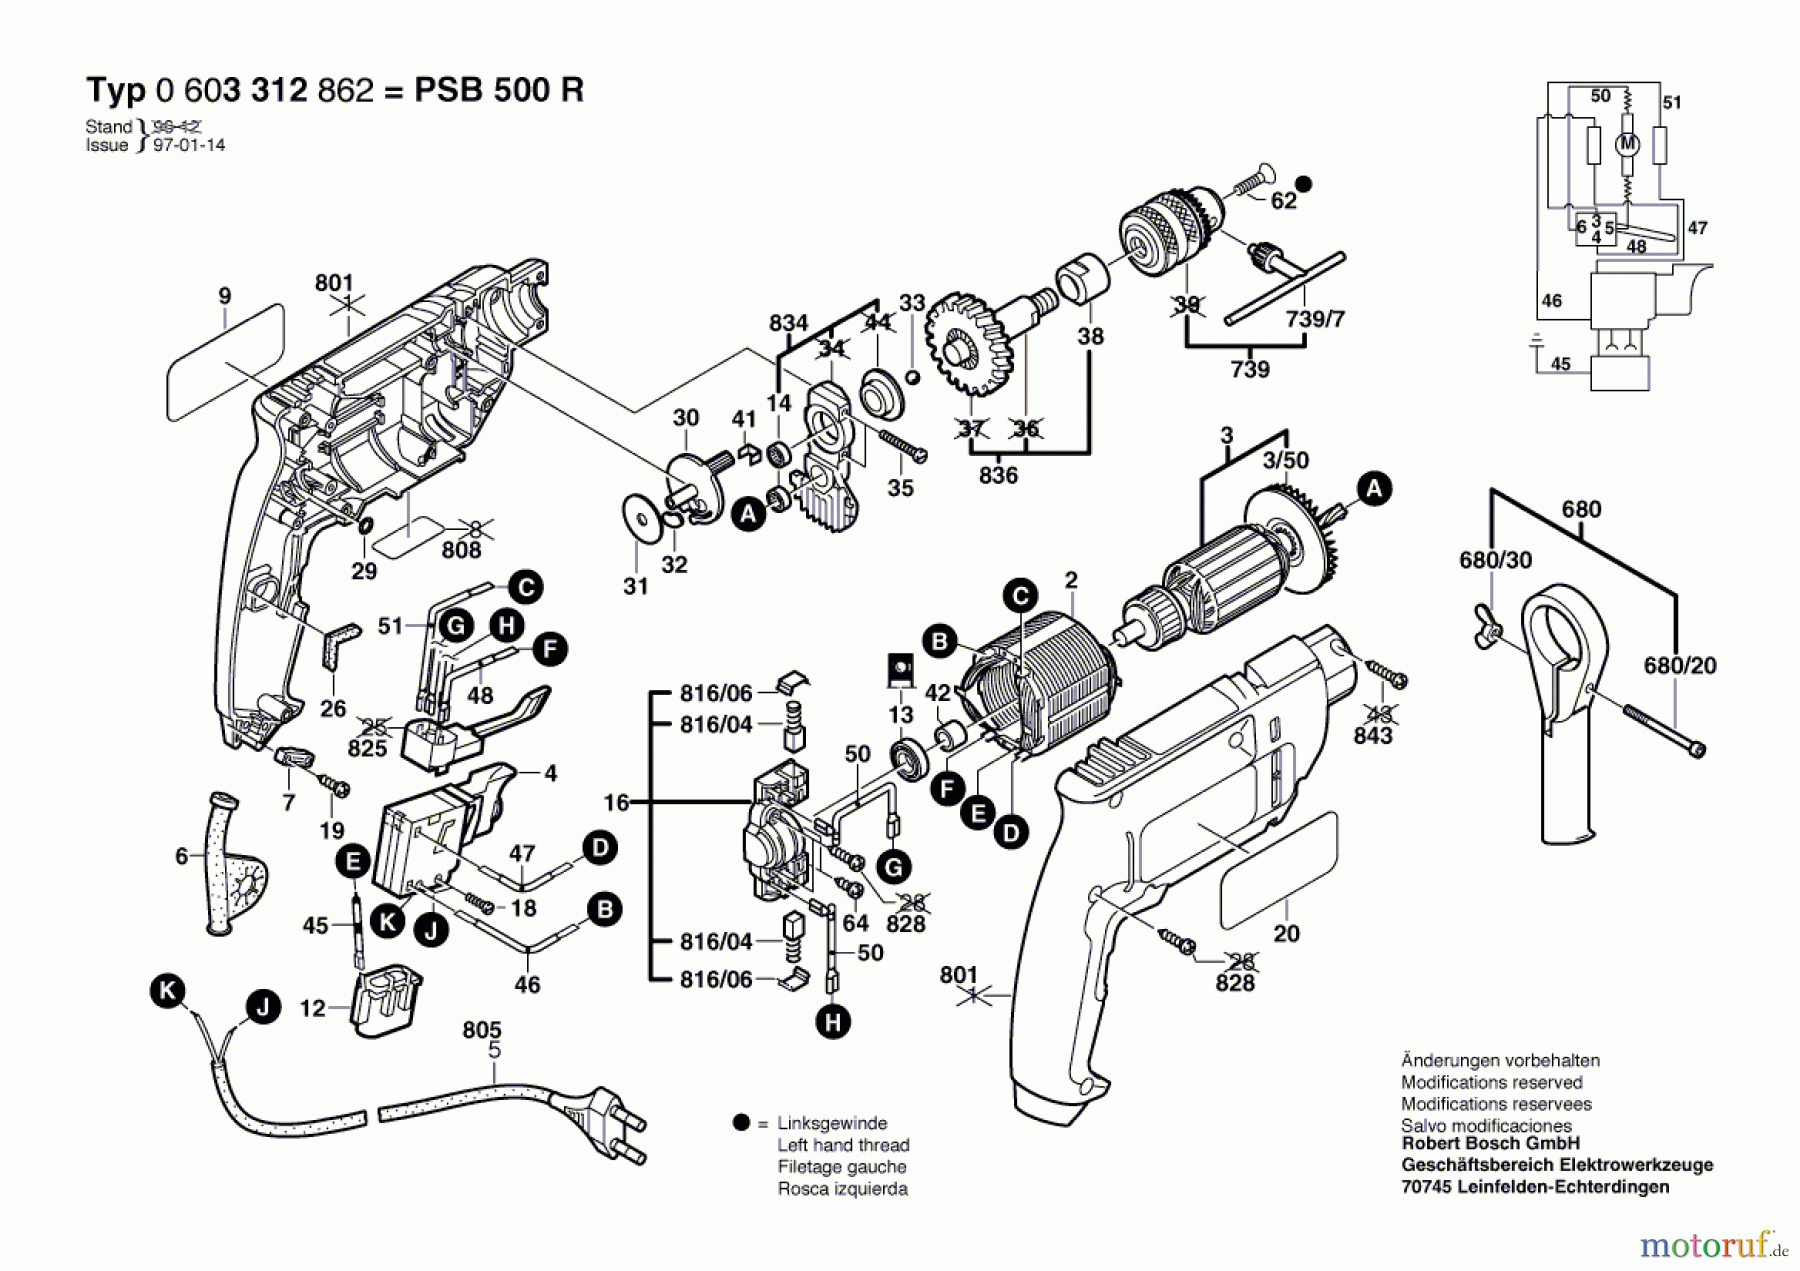  Bosch Werkzeug Schlagbohrmaschine PSB 500 R Seite 1